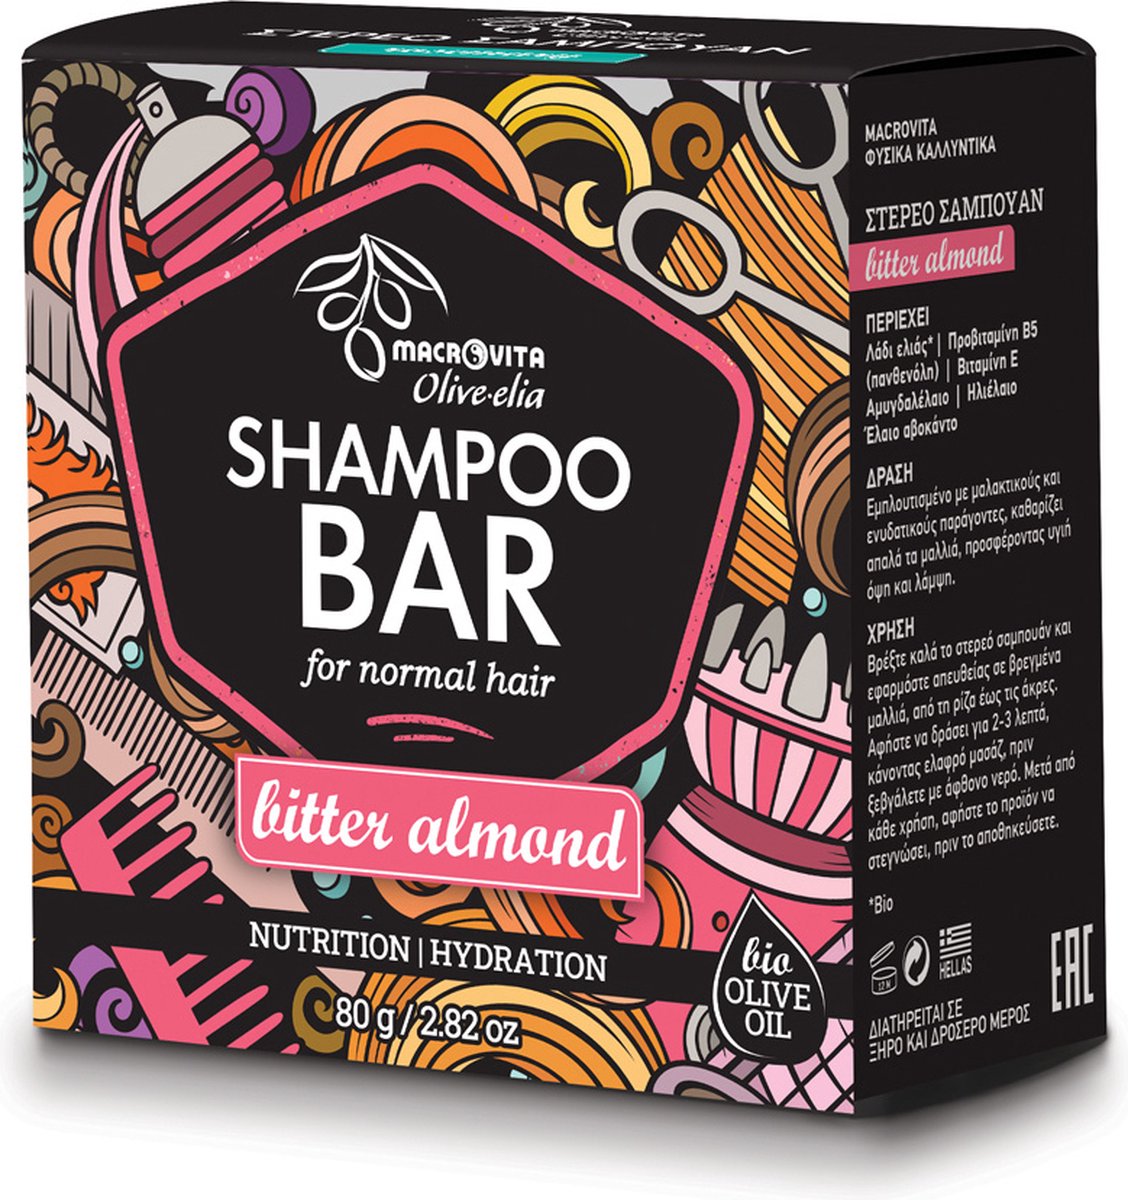 Olive-elia Shampoo Bar voor Normaal Haar (Amandel) - 80 gram